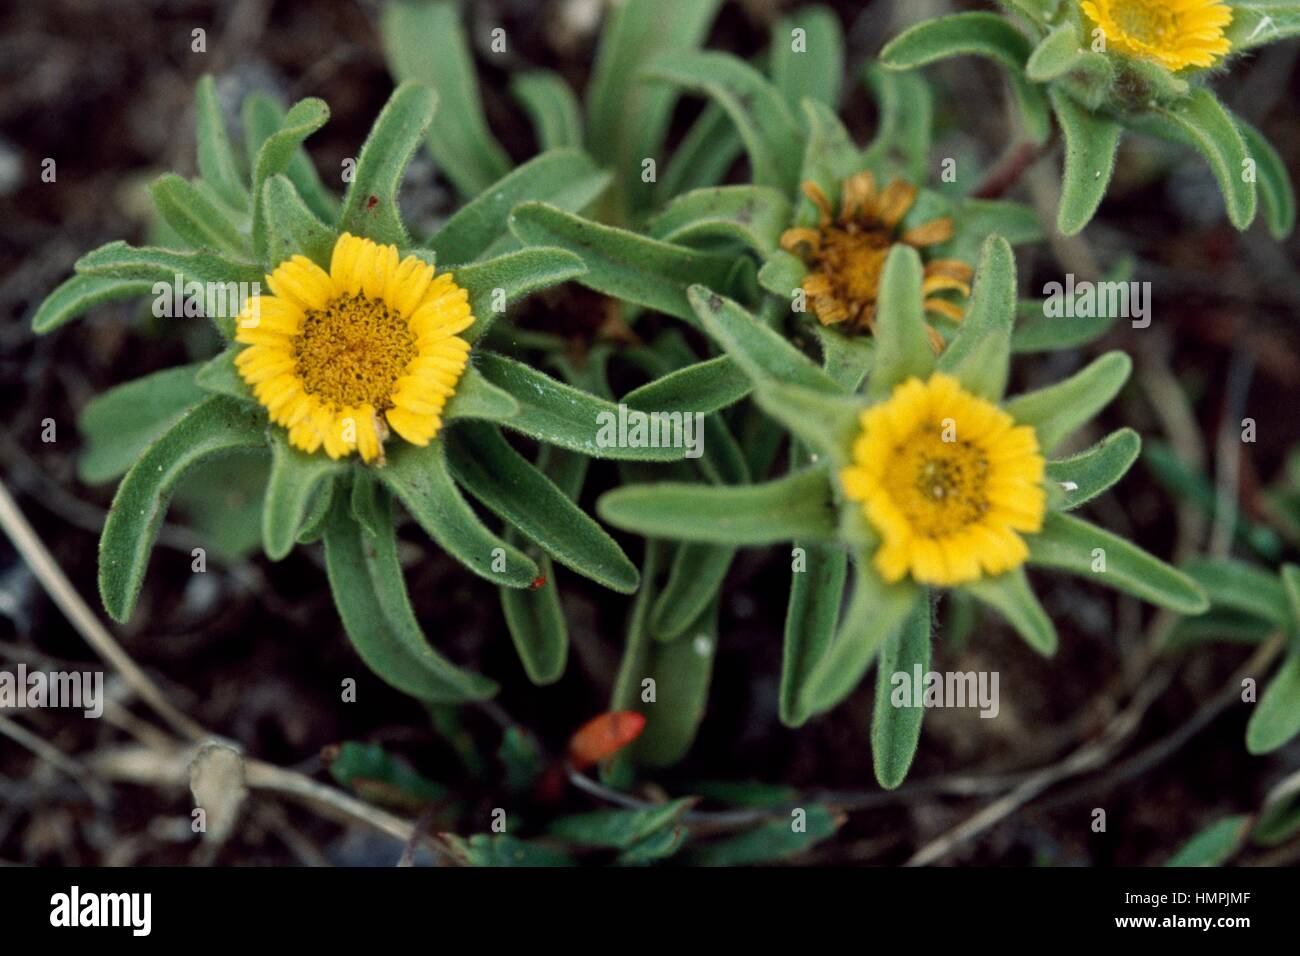 Asteriscus or Mediterranean Beach Daisy (Asteriscus maritimus or Pallenis maritima), Asteraceae. Stock Photo